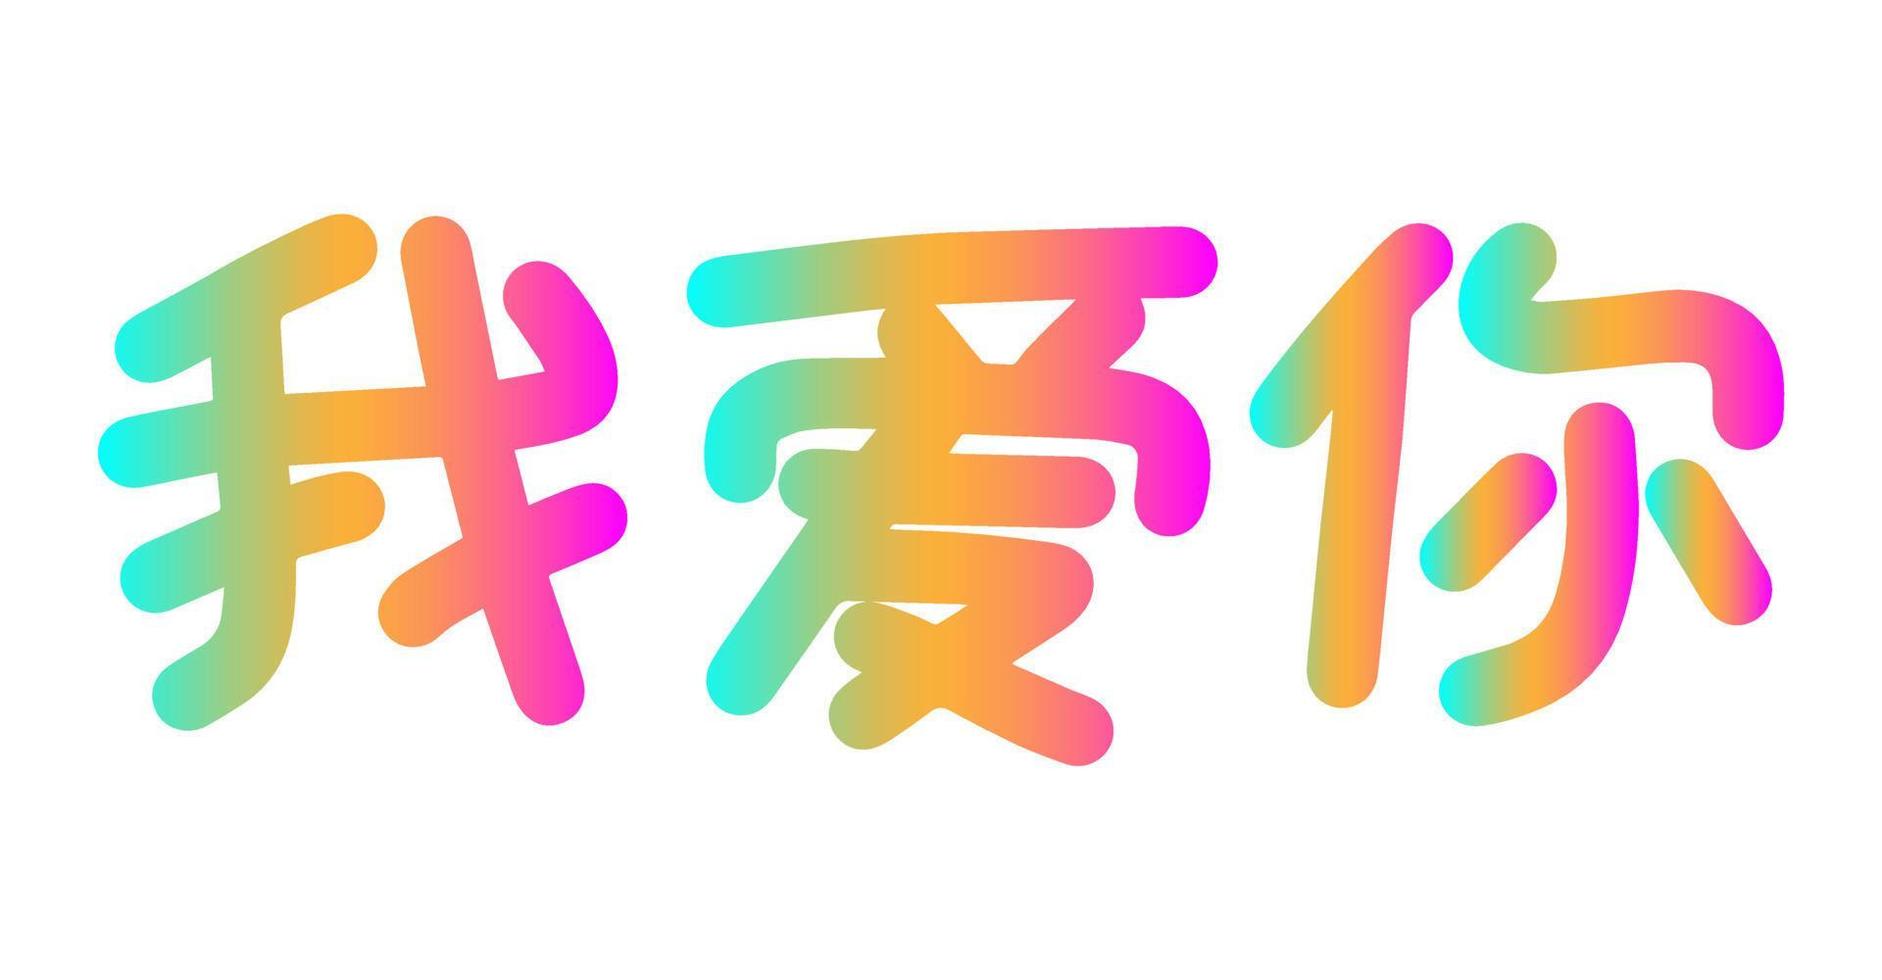 te amo frase de letras en chino mandarín. plantilla de tarjeta de felicitación colorida. ilustración vectorial con jeroglíficos. vector